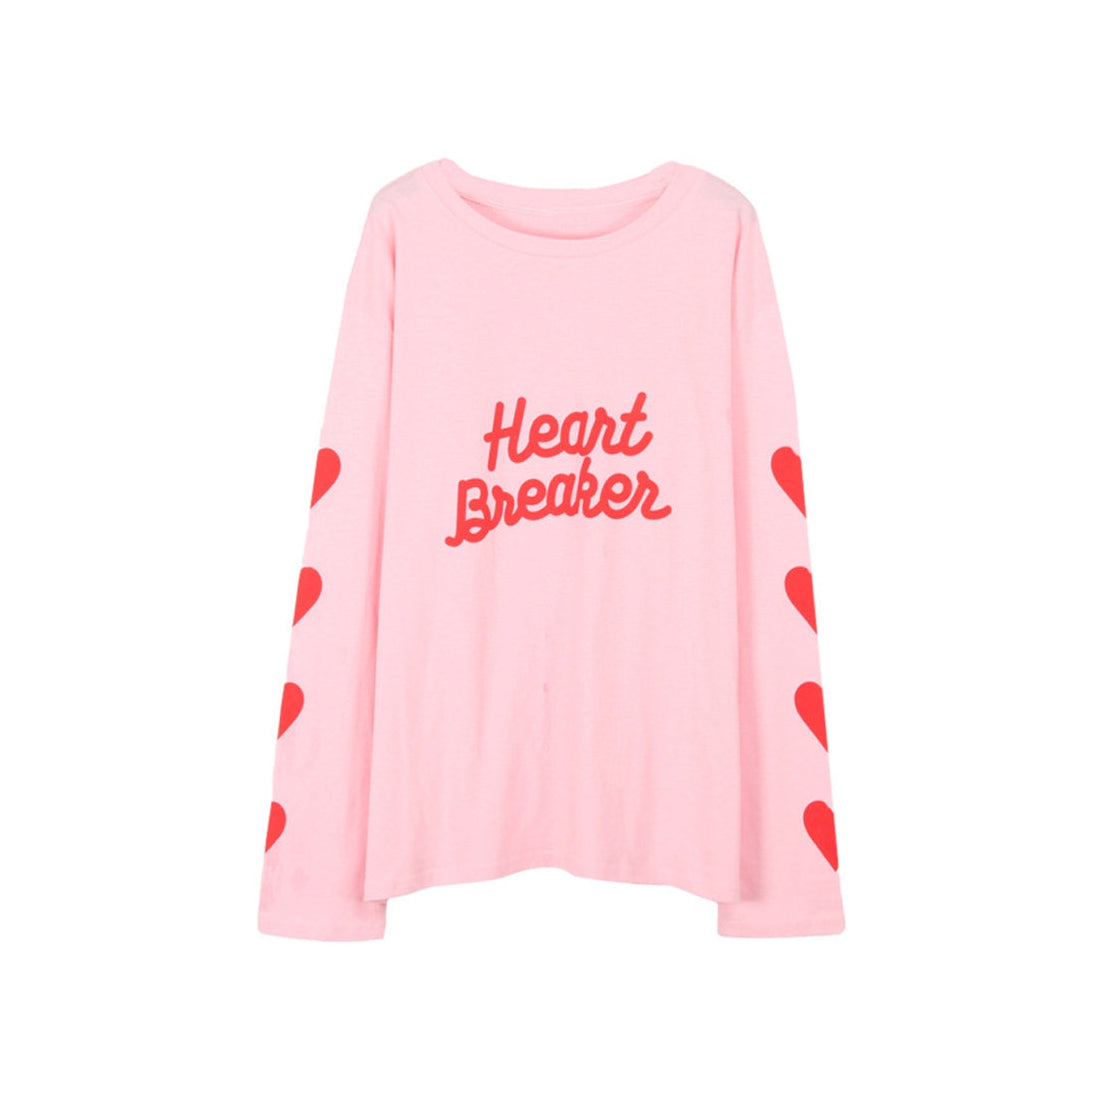 Heart Breaker T-Shirt-Sweaters-MAUV STUDIO-STREETWEAR-Y2K-CLOTHING